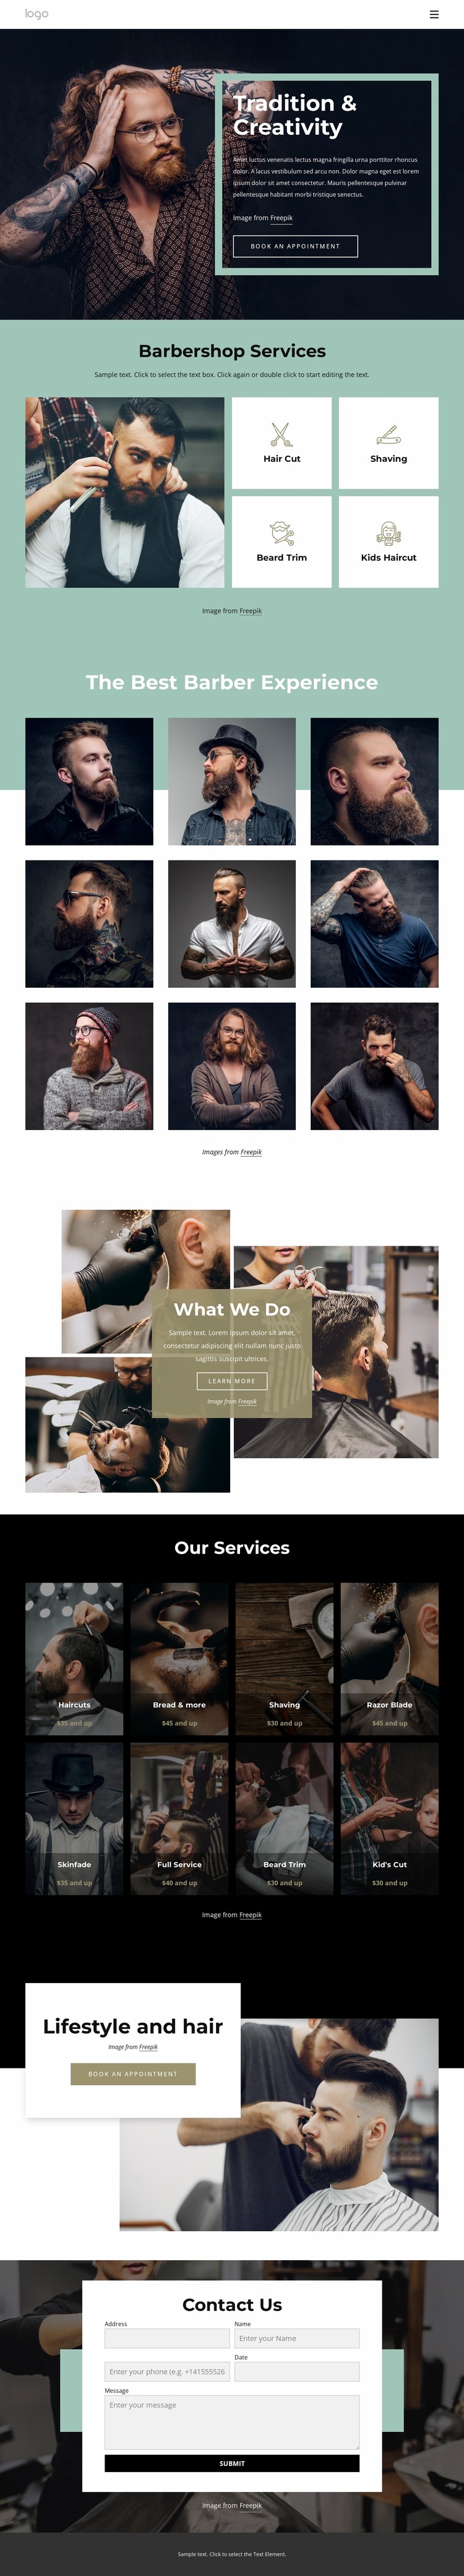 Public barber salon Website Template